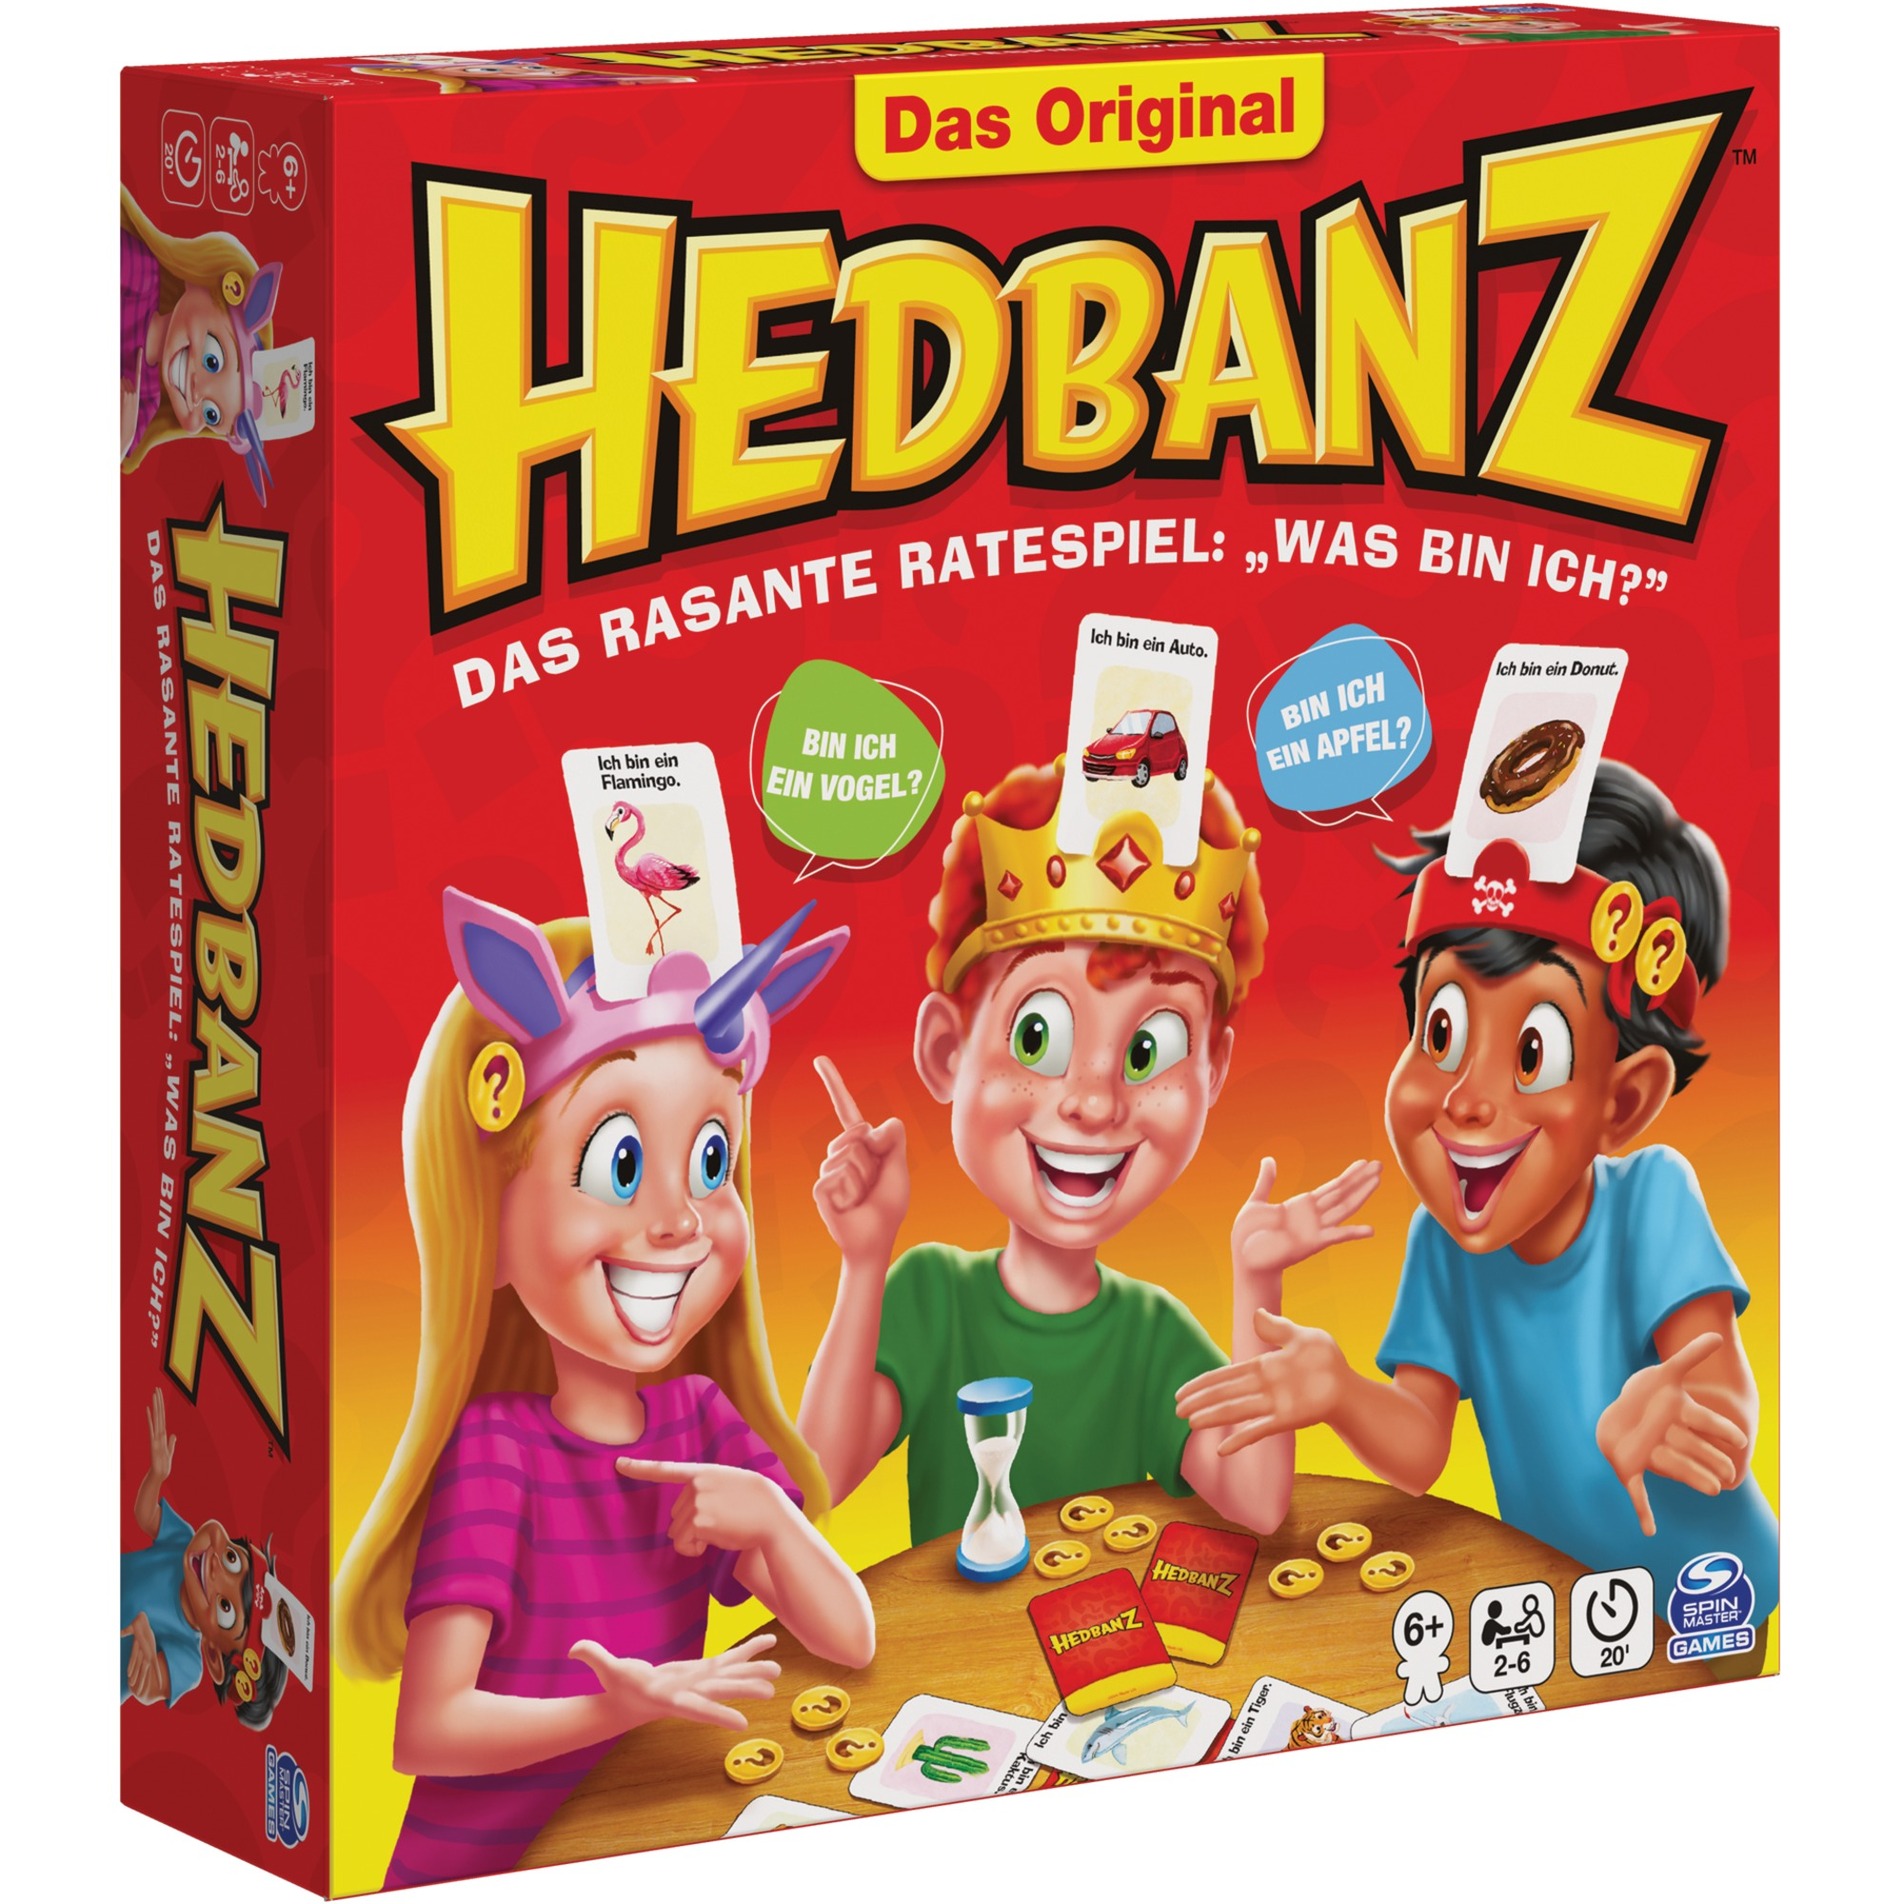 Image of Alternate - Hedbanz - das rasante Ratespiel für die ganze Familie, Partyspiel online einkaufen bei Alternate